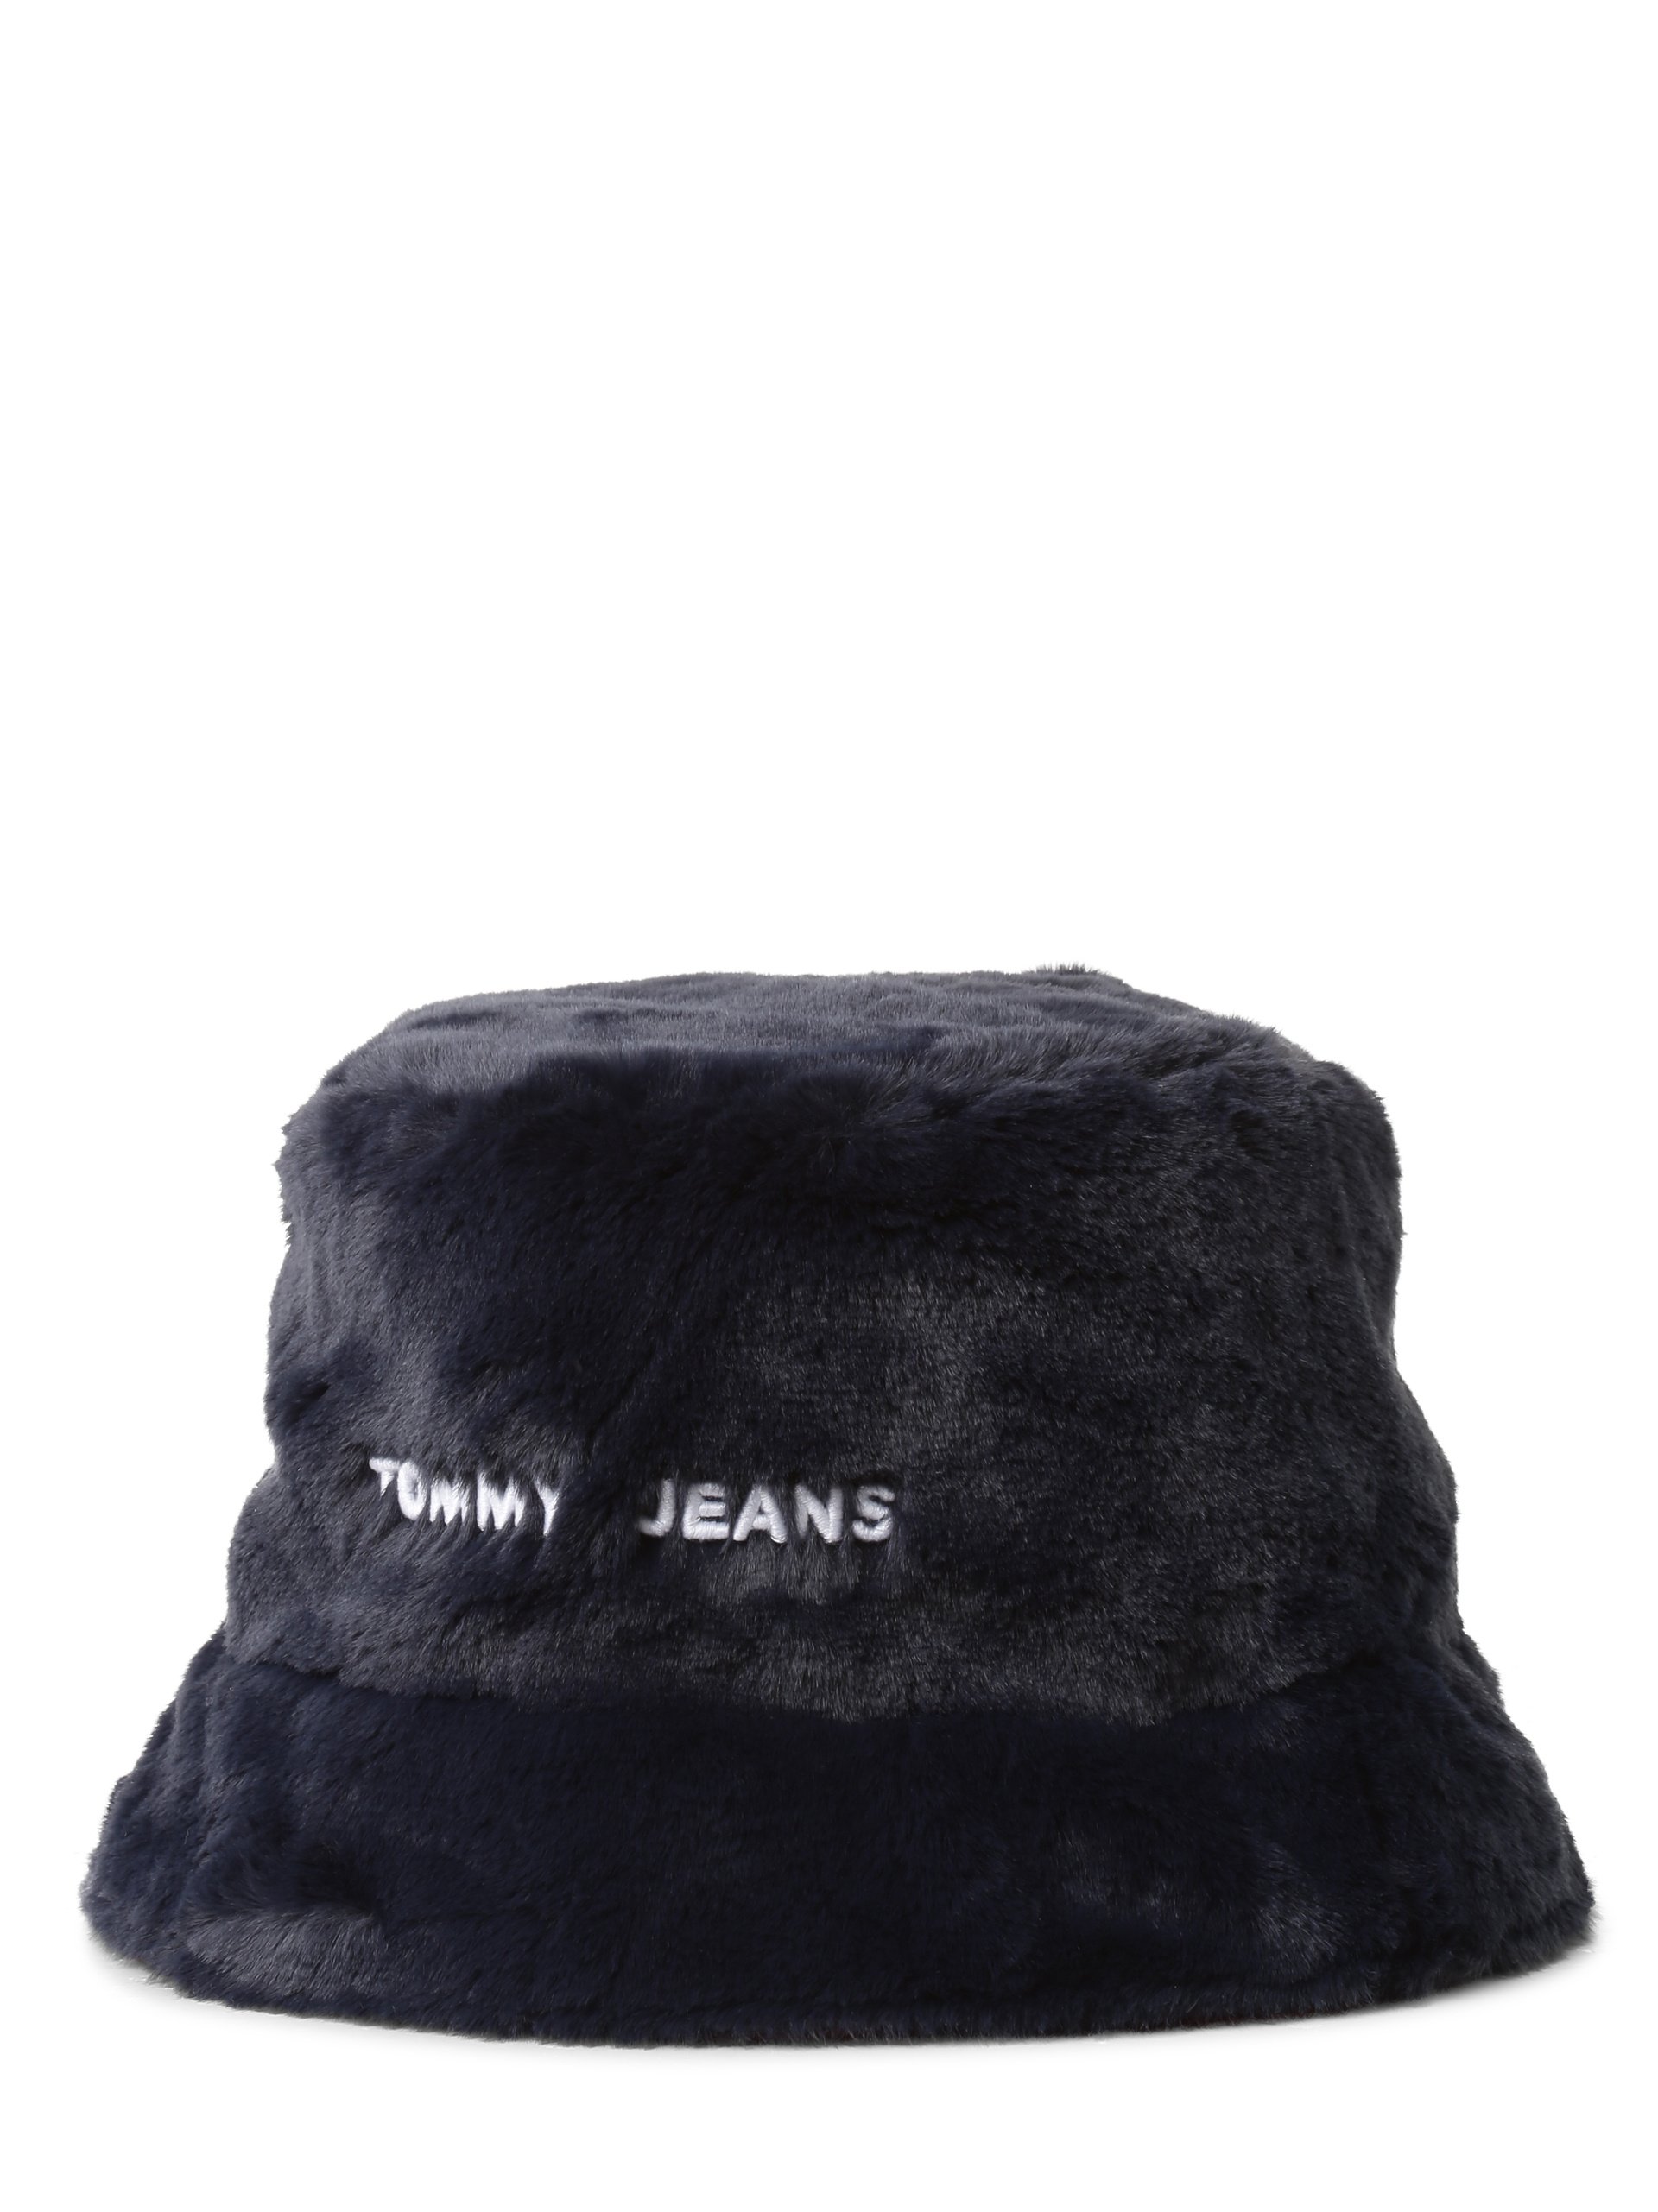 Tommy Jeans Damen Bucket Hat zum Wenden online kaufen